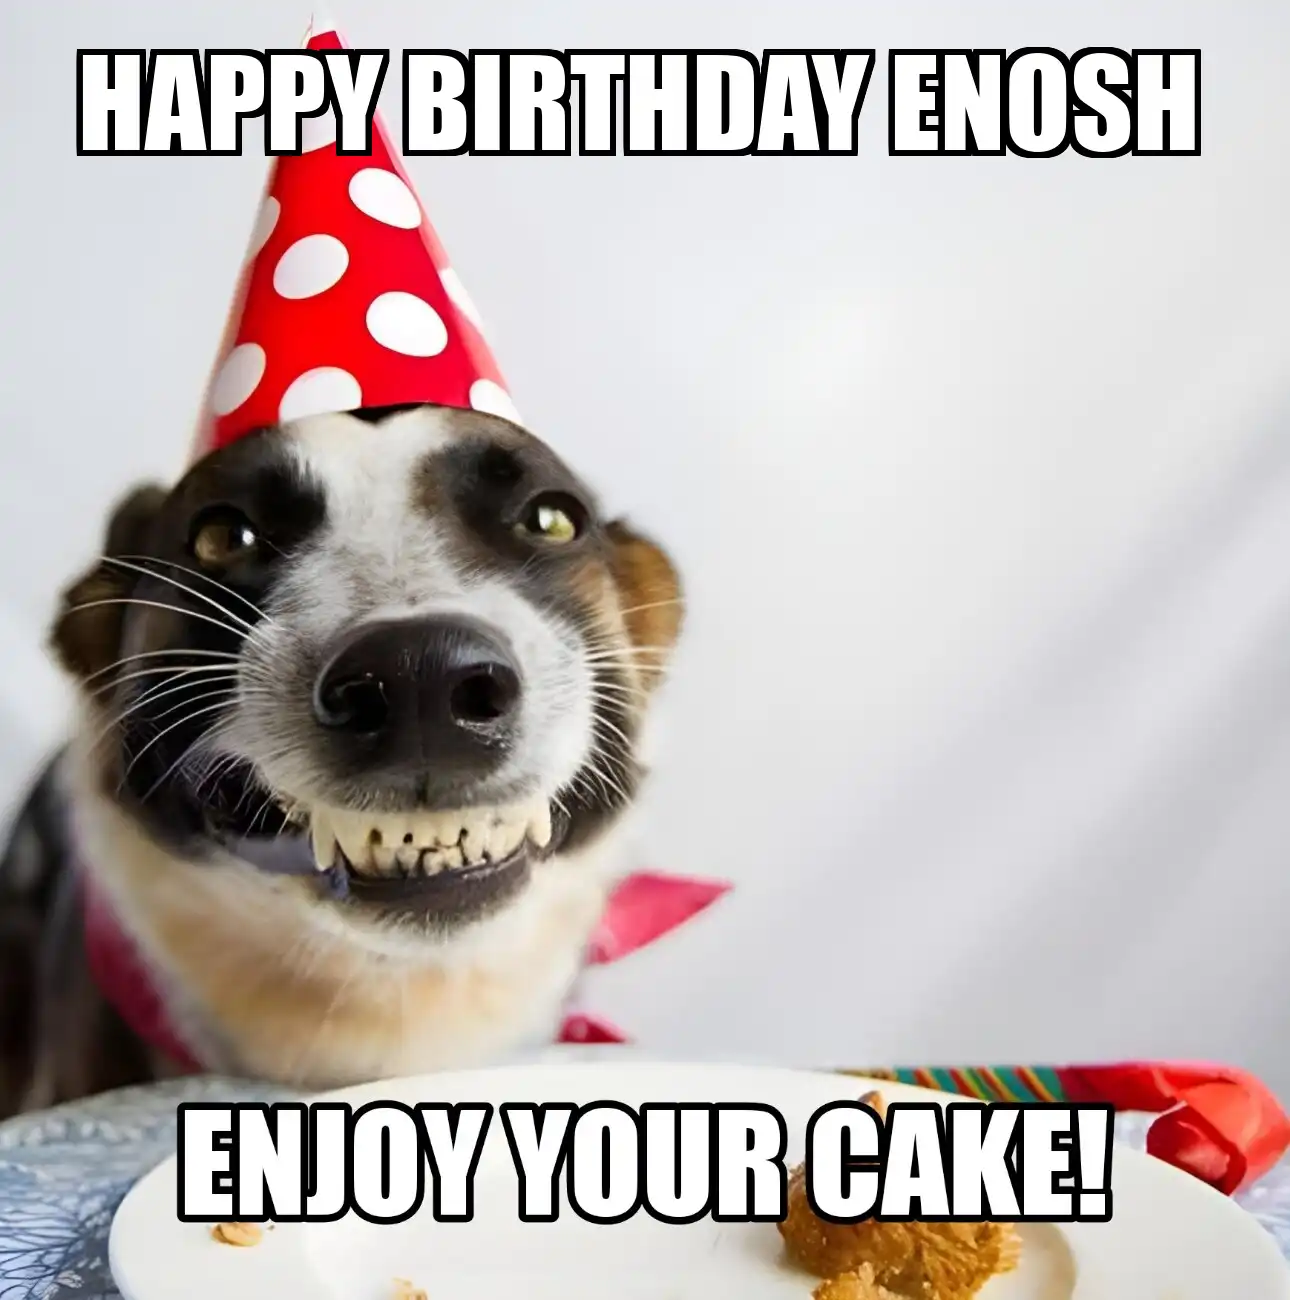 Happy Birthday Enosh Enjoy Your Cake Dog Meme